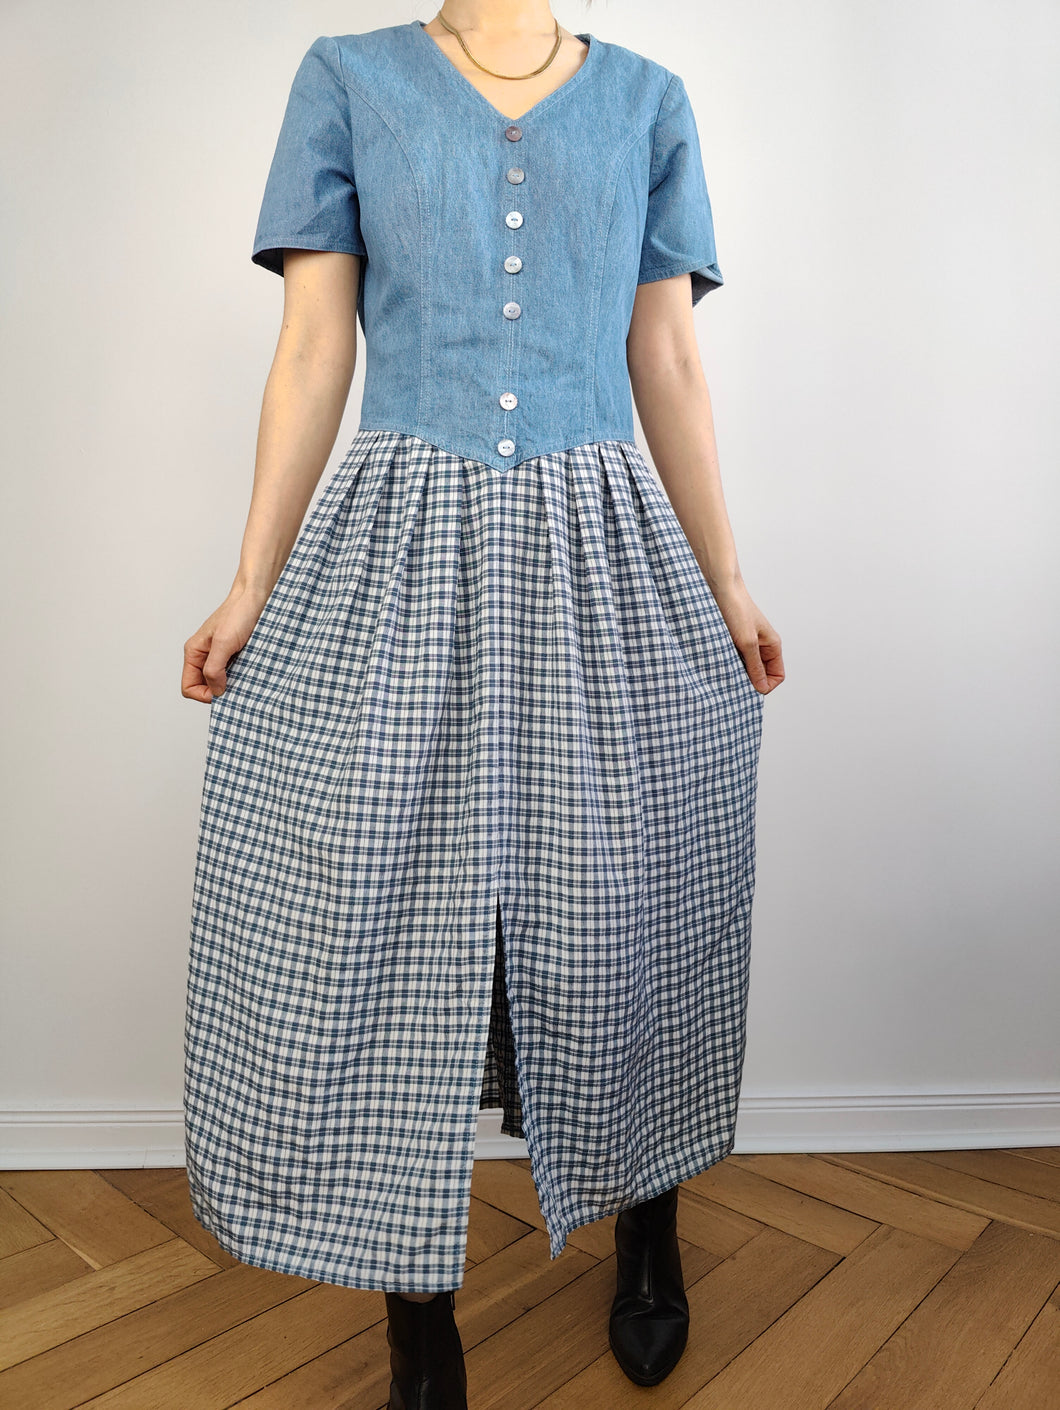 The Blue Denim Check Skirt Dress | Vintage jeans spring summer midi skirt checker plaid white S-M